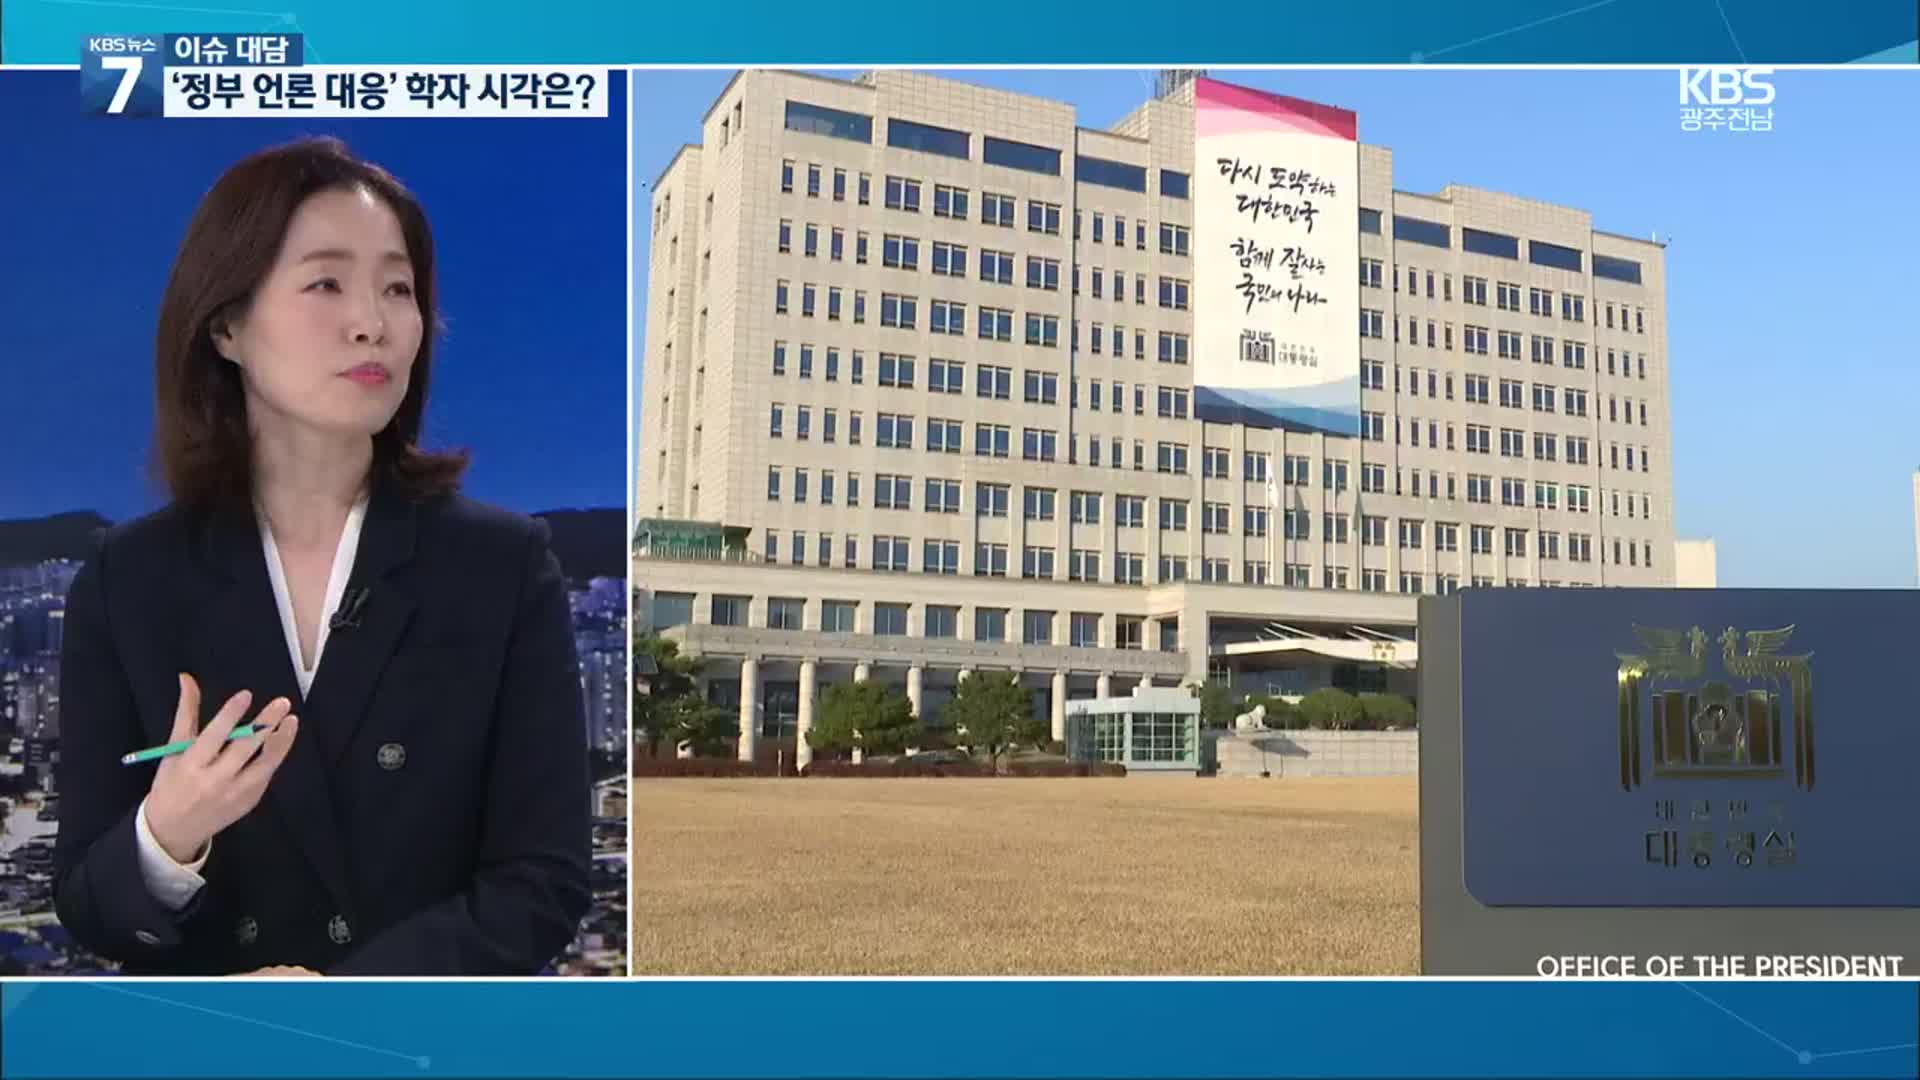 [이슈대담] ‘MBC 비속어 보도’ 파장 확산…언론 자유 침해?